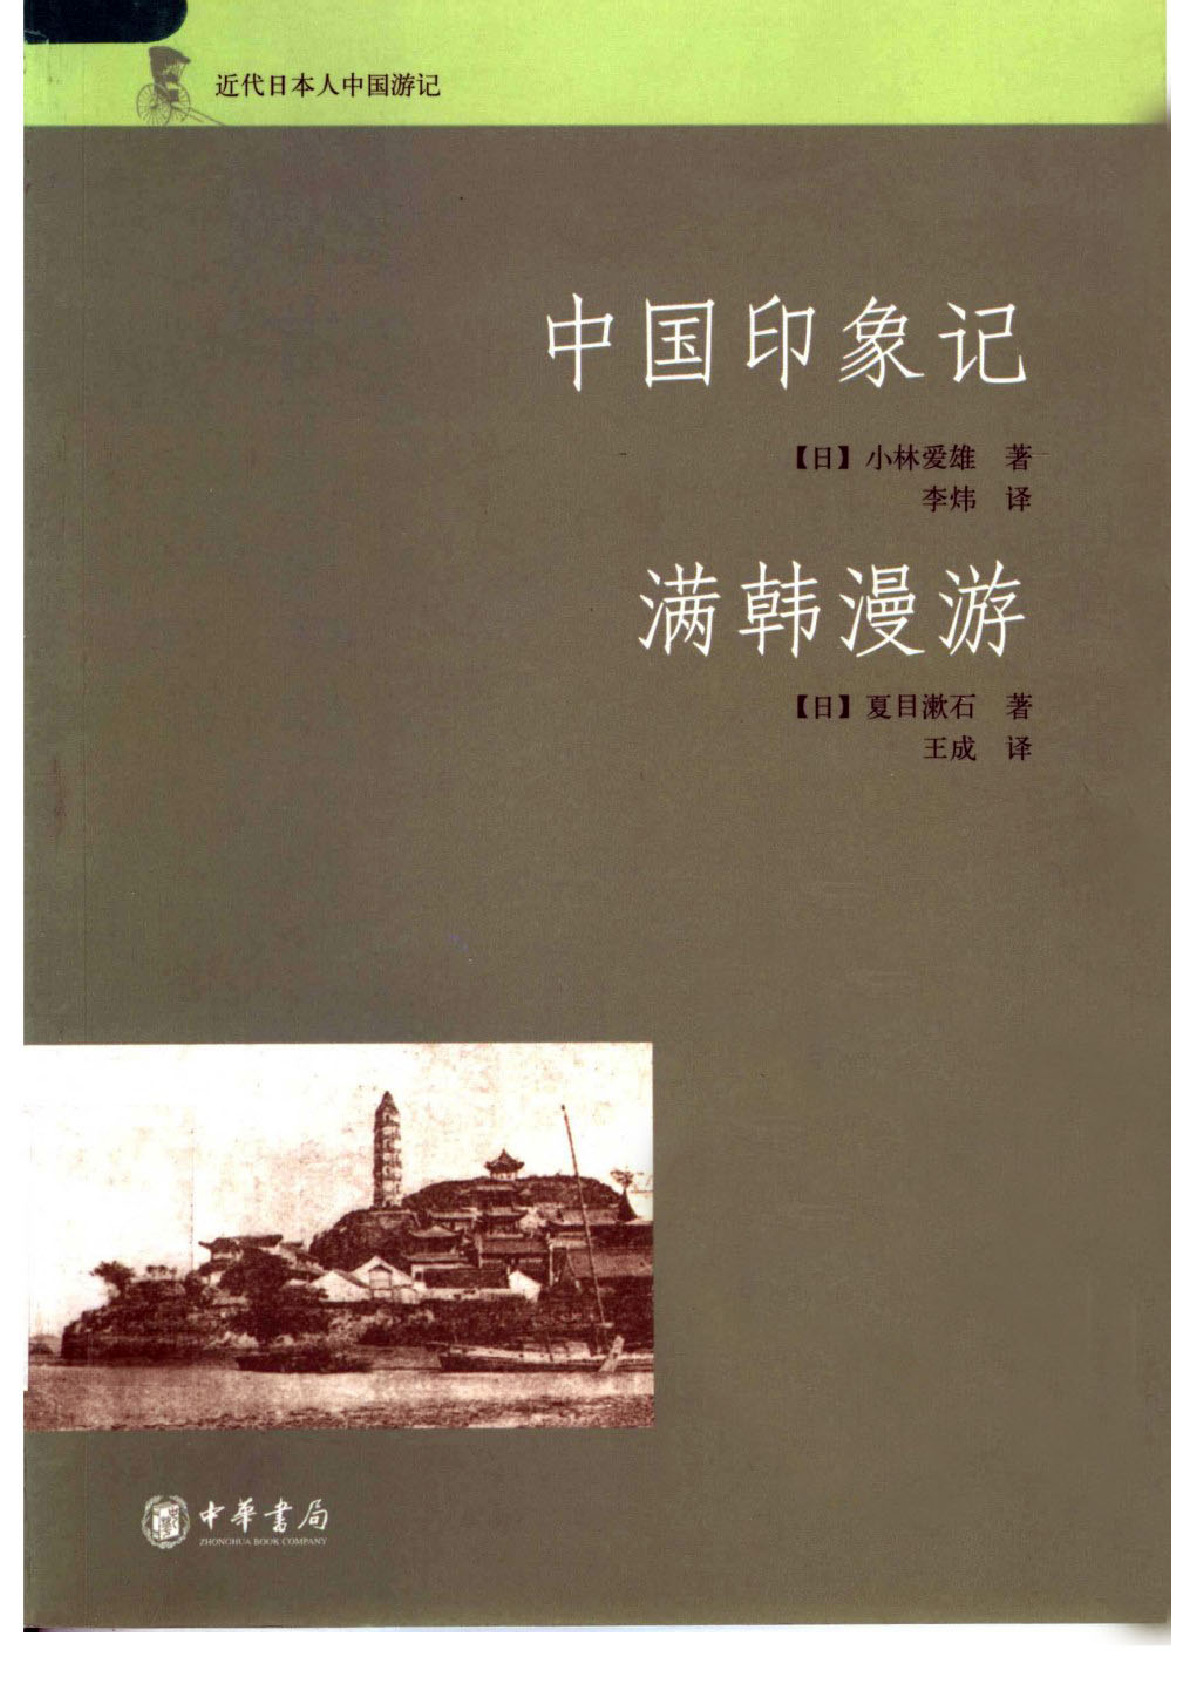 中国印象记·满韩漫游 （日）小林爱雄、夏目漱石著